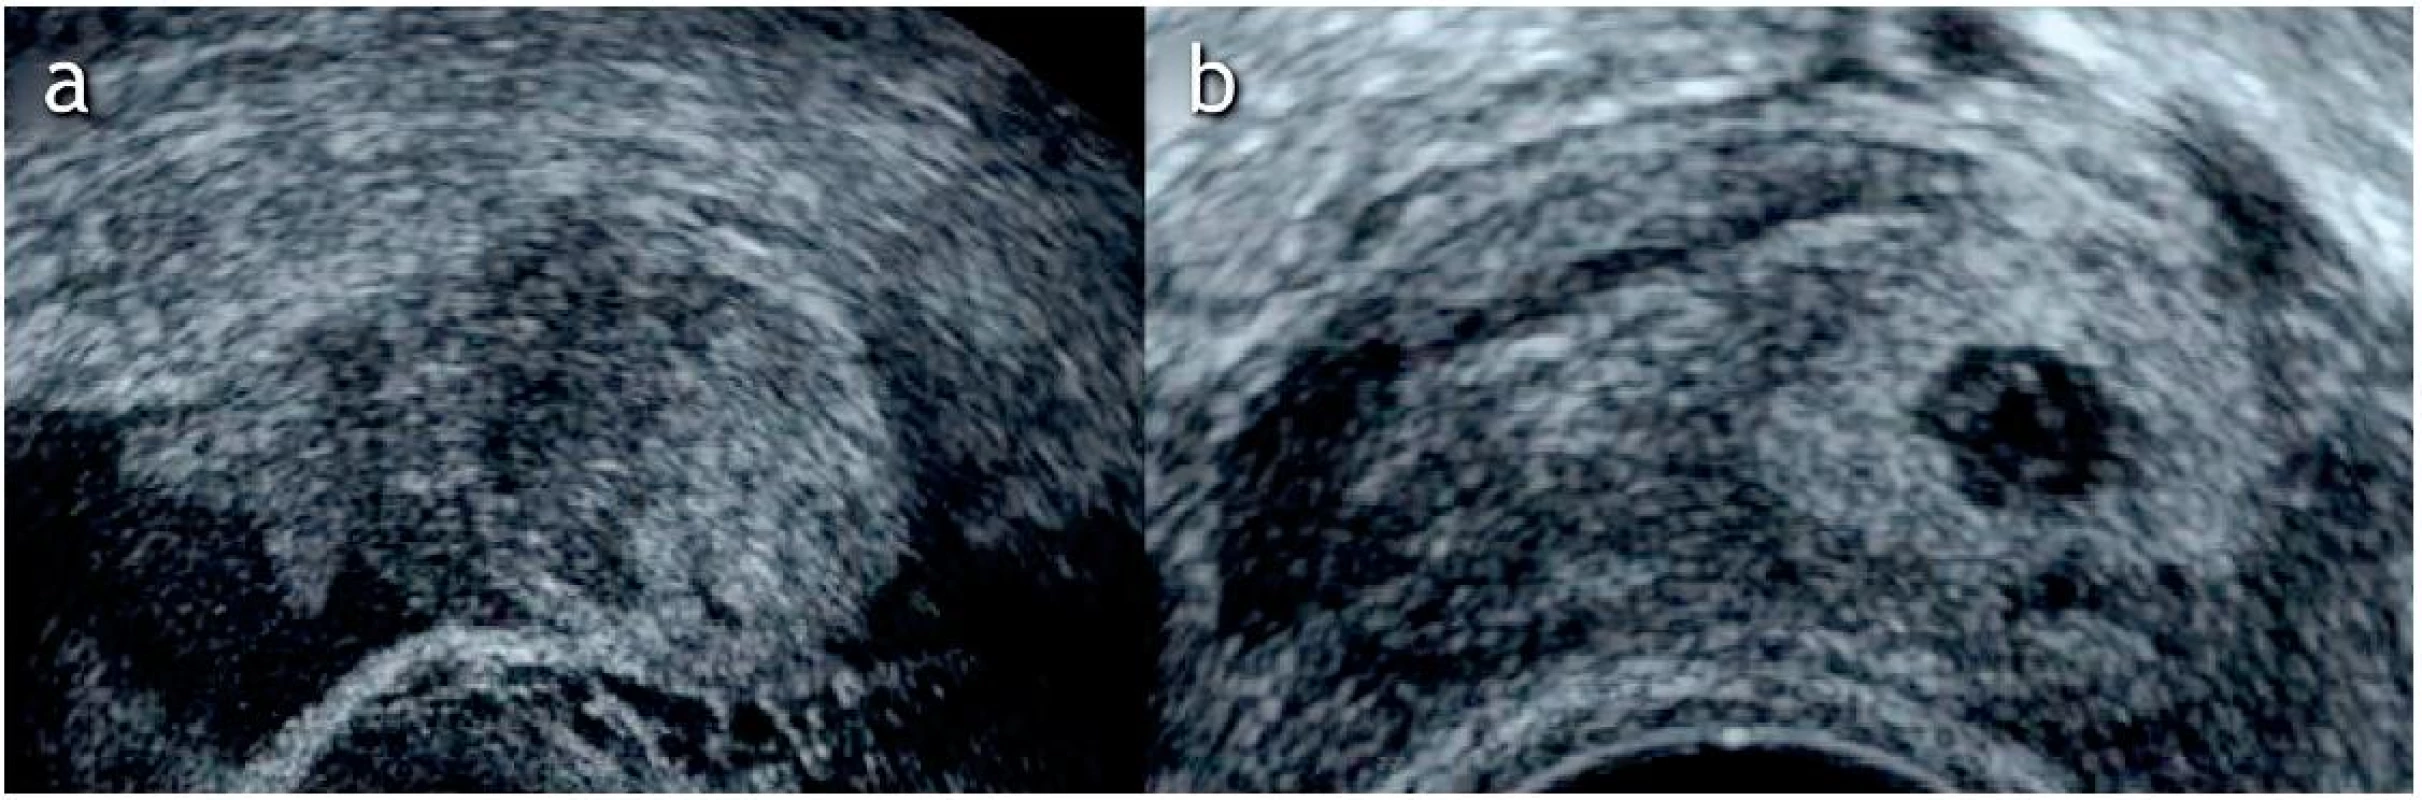 Ultrazvukový nález tubárního těhotenství
a) Ultrazvukové zobrazení extrauterinního nehomogenního útvaru v blízkosti ovaria, se kterým nejeví souhyby při tlaku sondou („blob sign“), grav. hebd. 6+3 podle PM (poslední menstruace)
b) Ultrazvukové zobrazení extrauterinně uloženého gestačního váčku s hyperechogenním prstencem („bagel sign“), grav. hebd. 5+3 podle PM